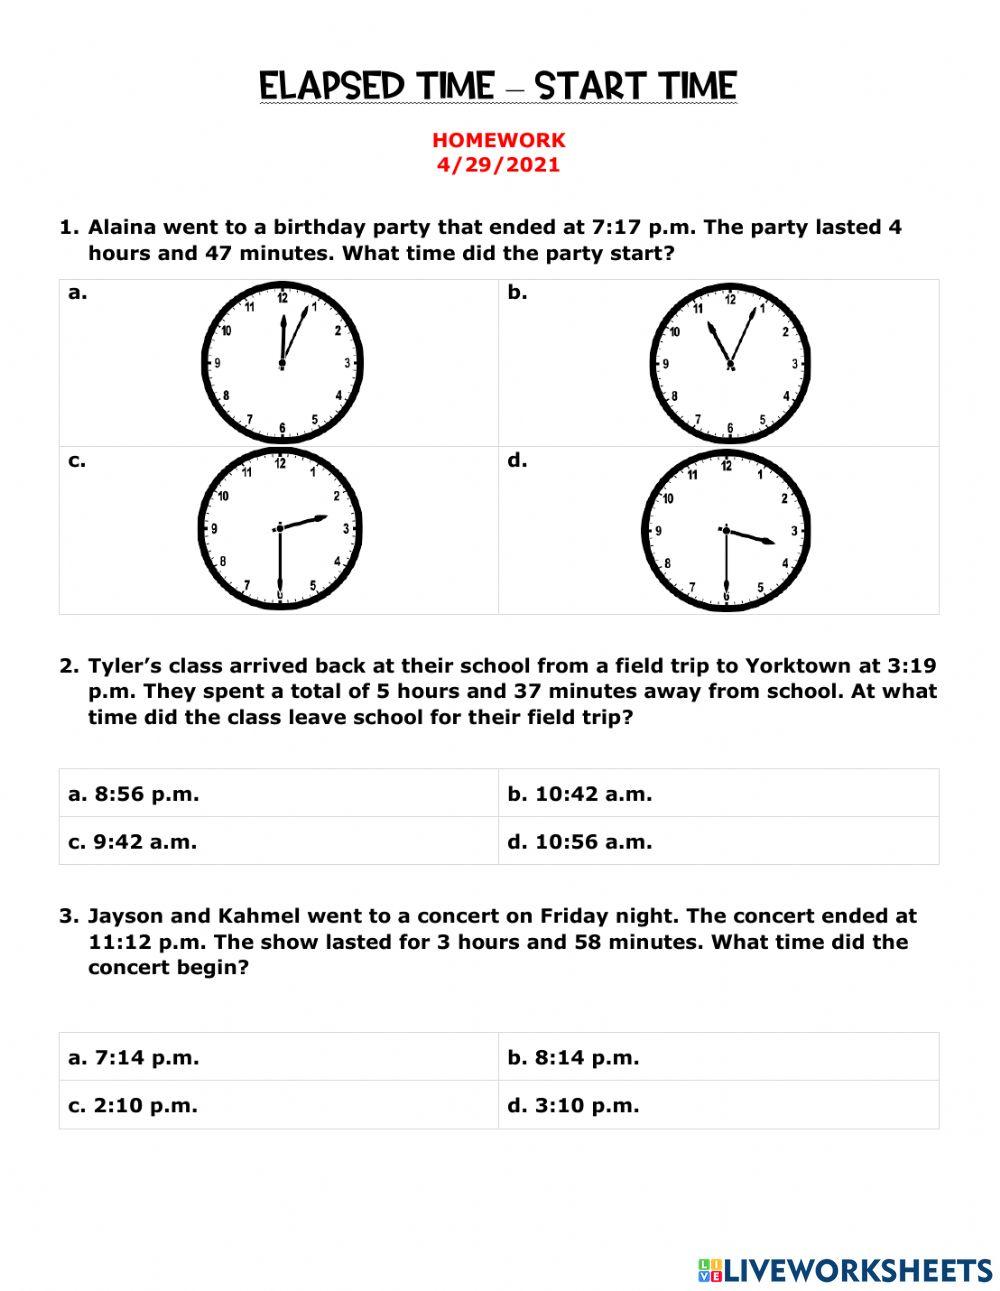 Elapsed Time - Start Time Homework